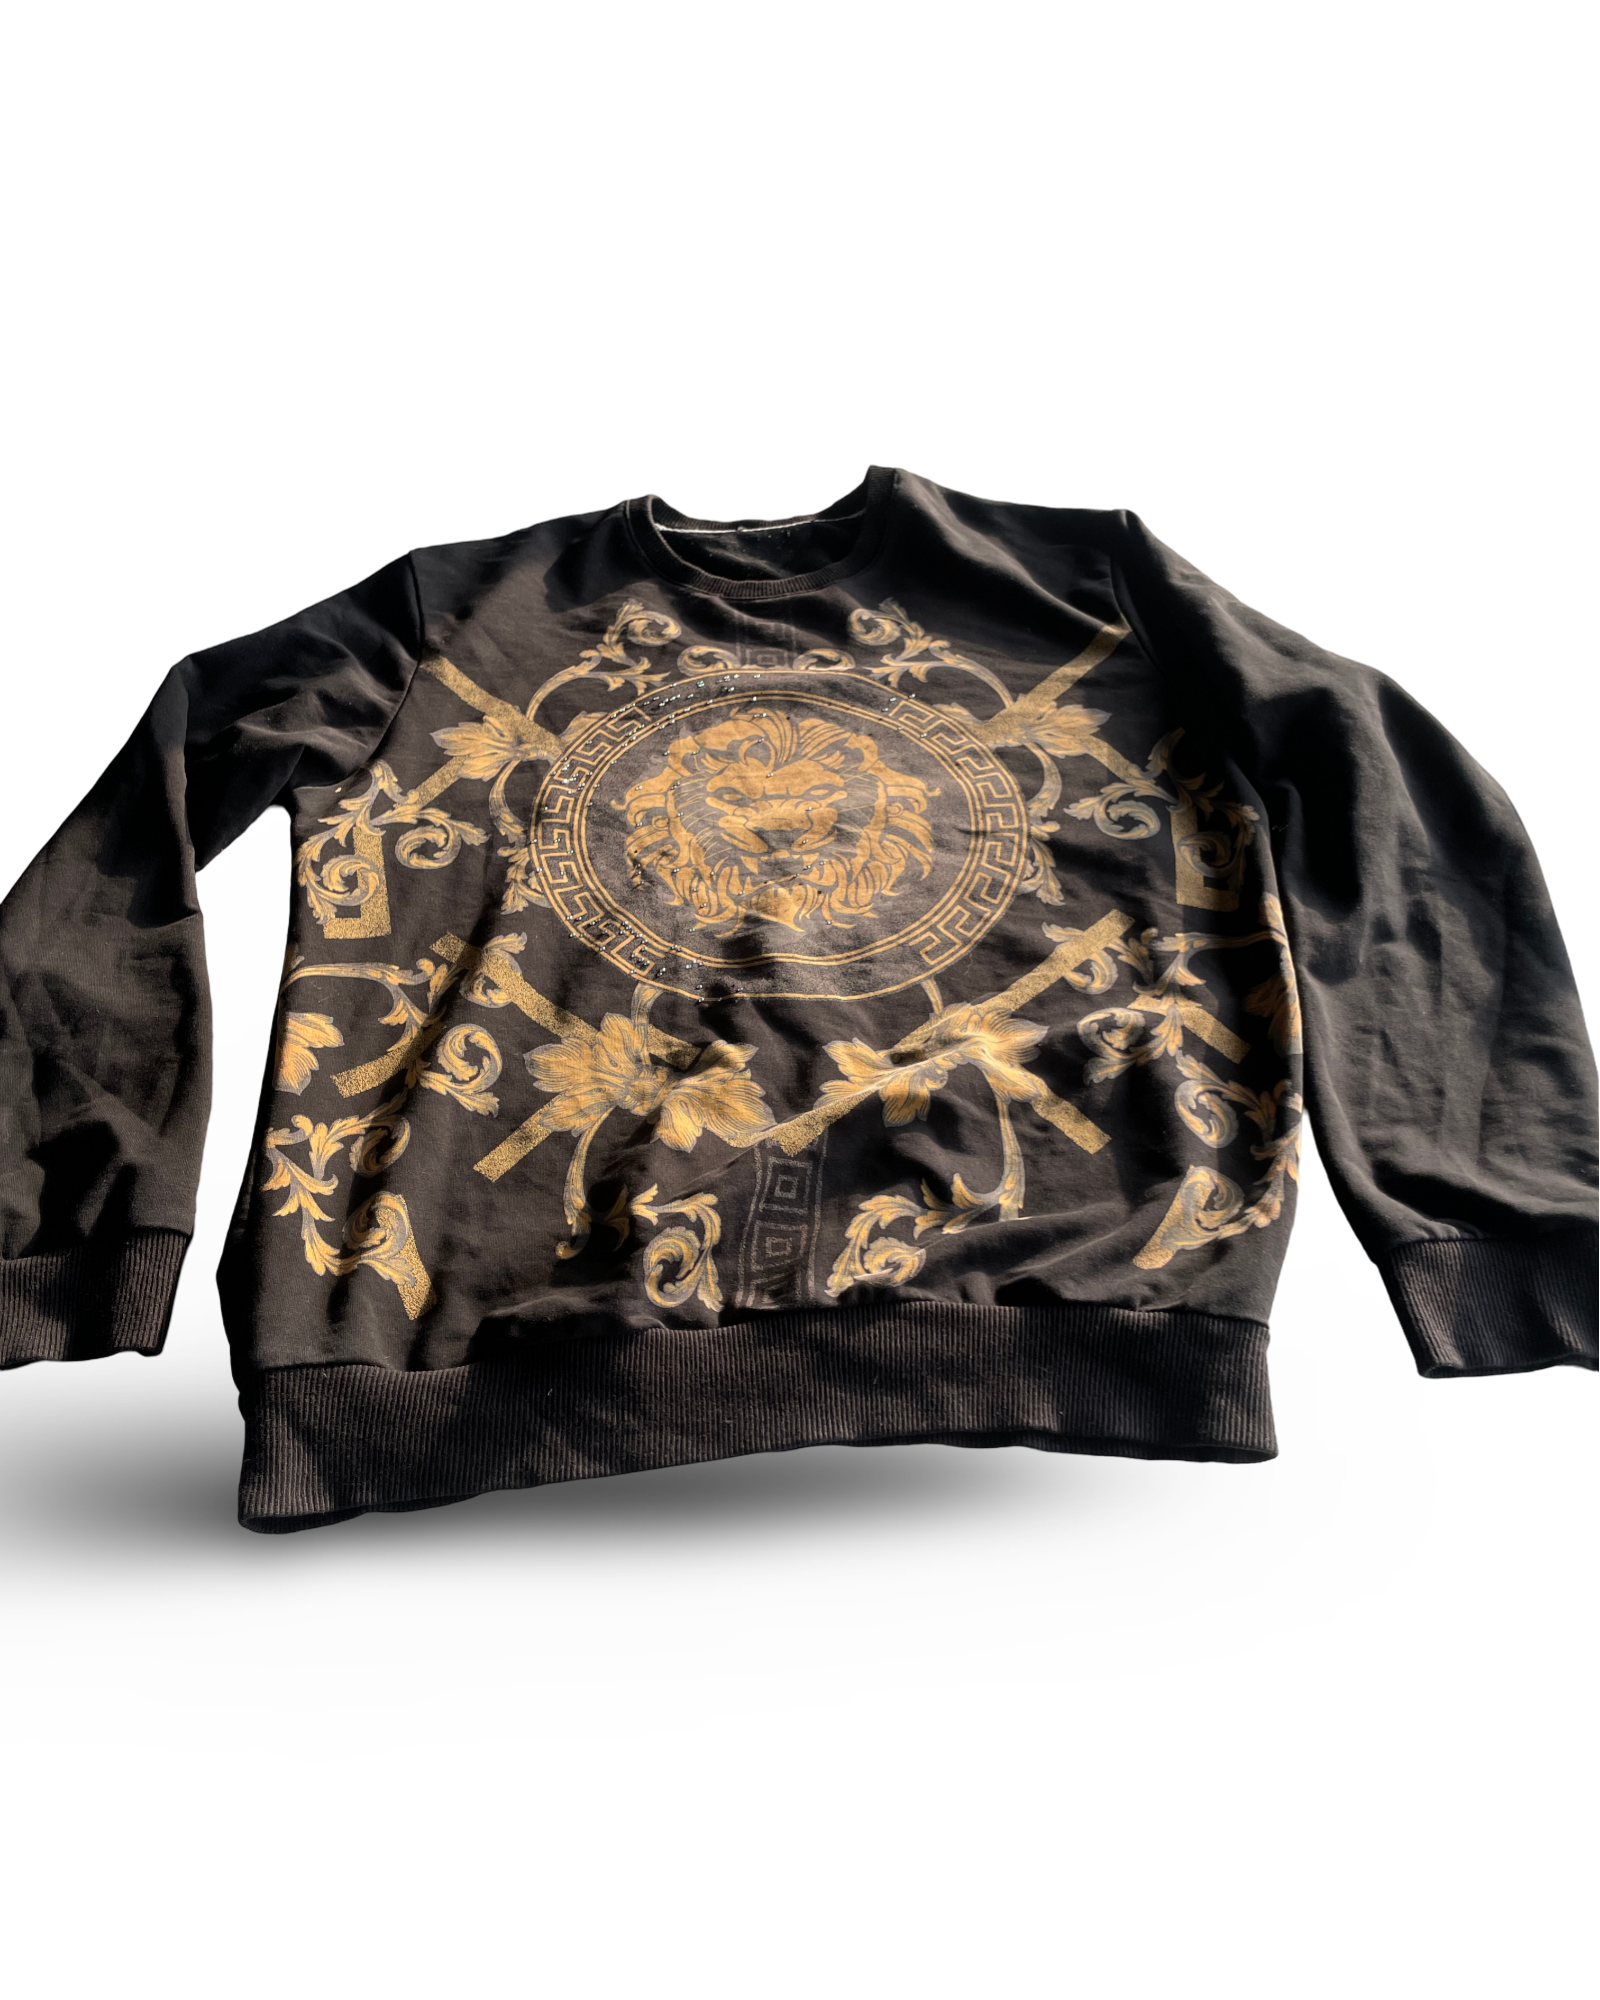 Vintage Black Medusa Design Sweatshirt - Size Small/Medium (SKU 4603)